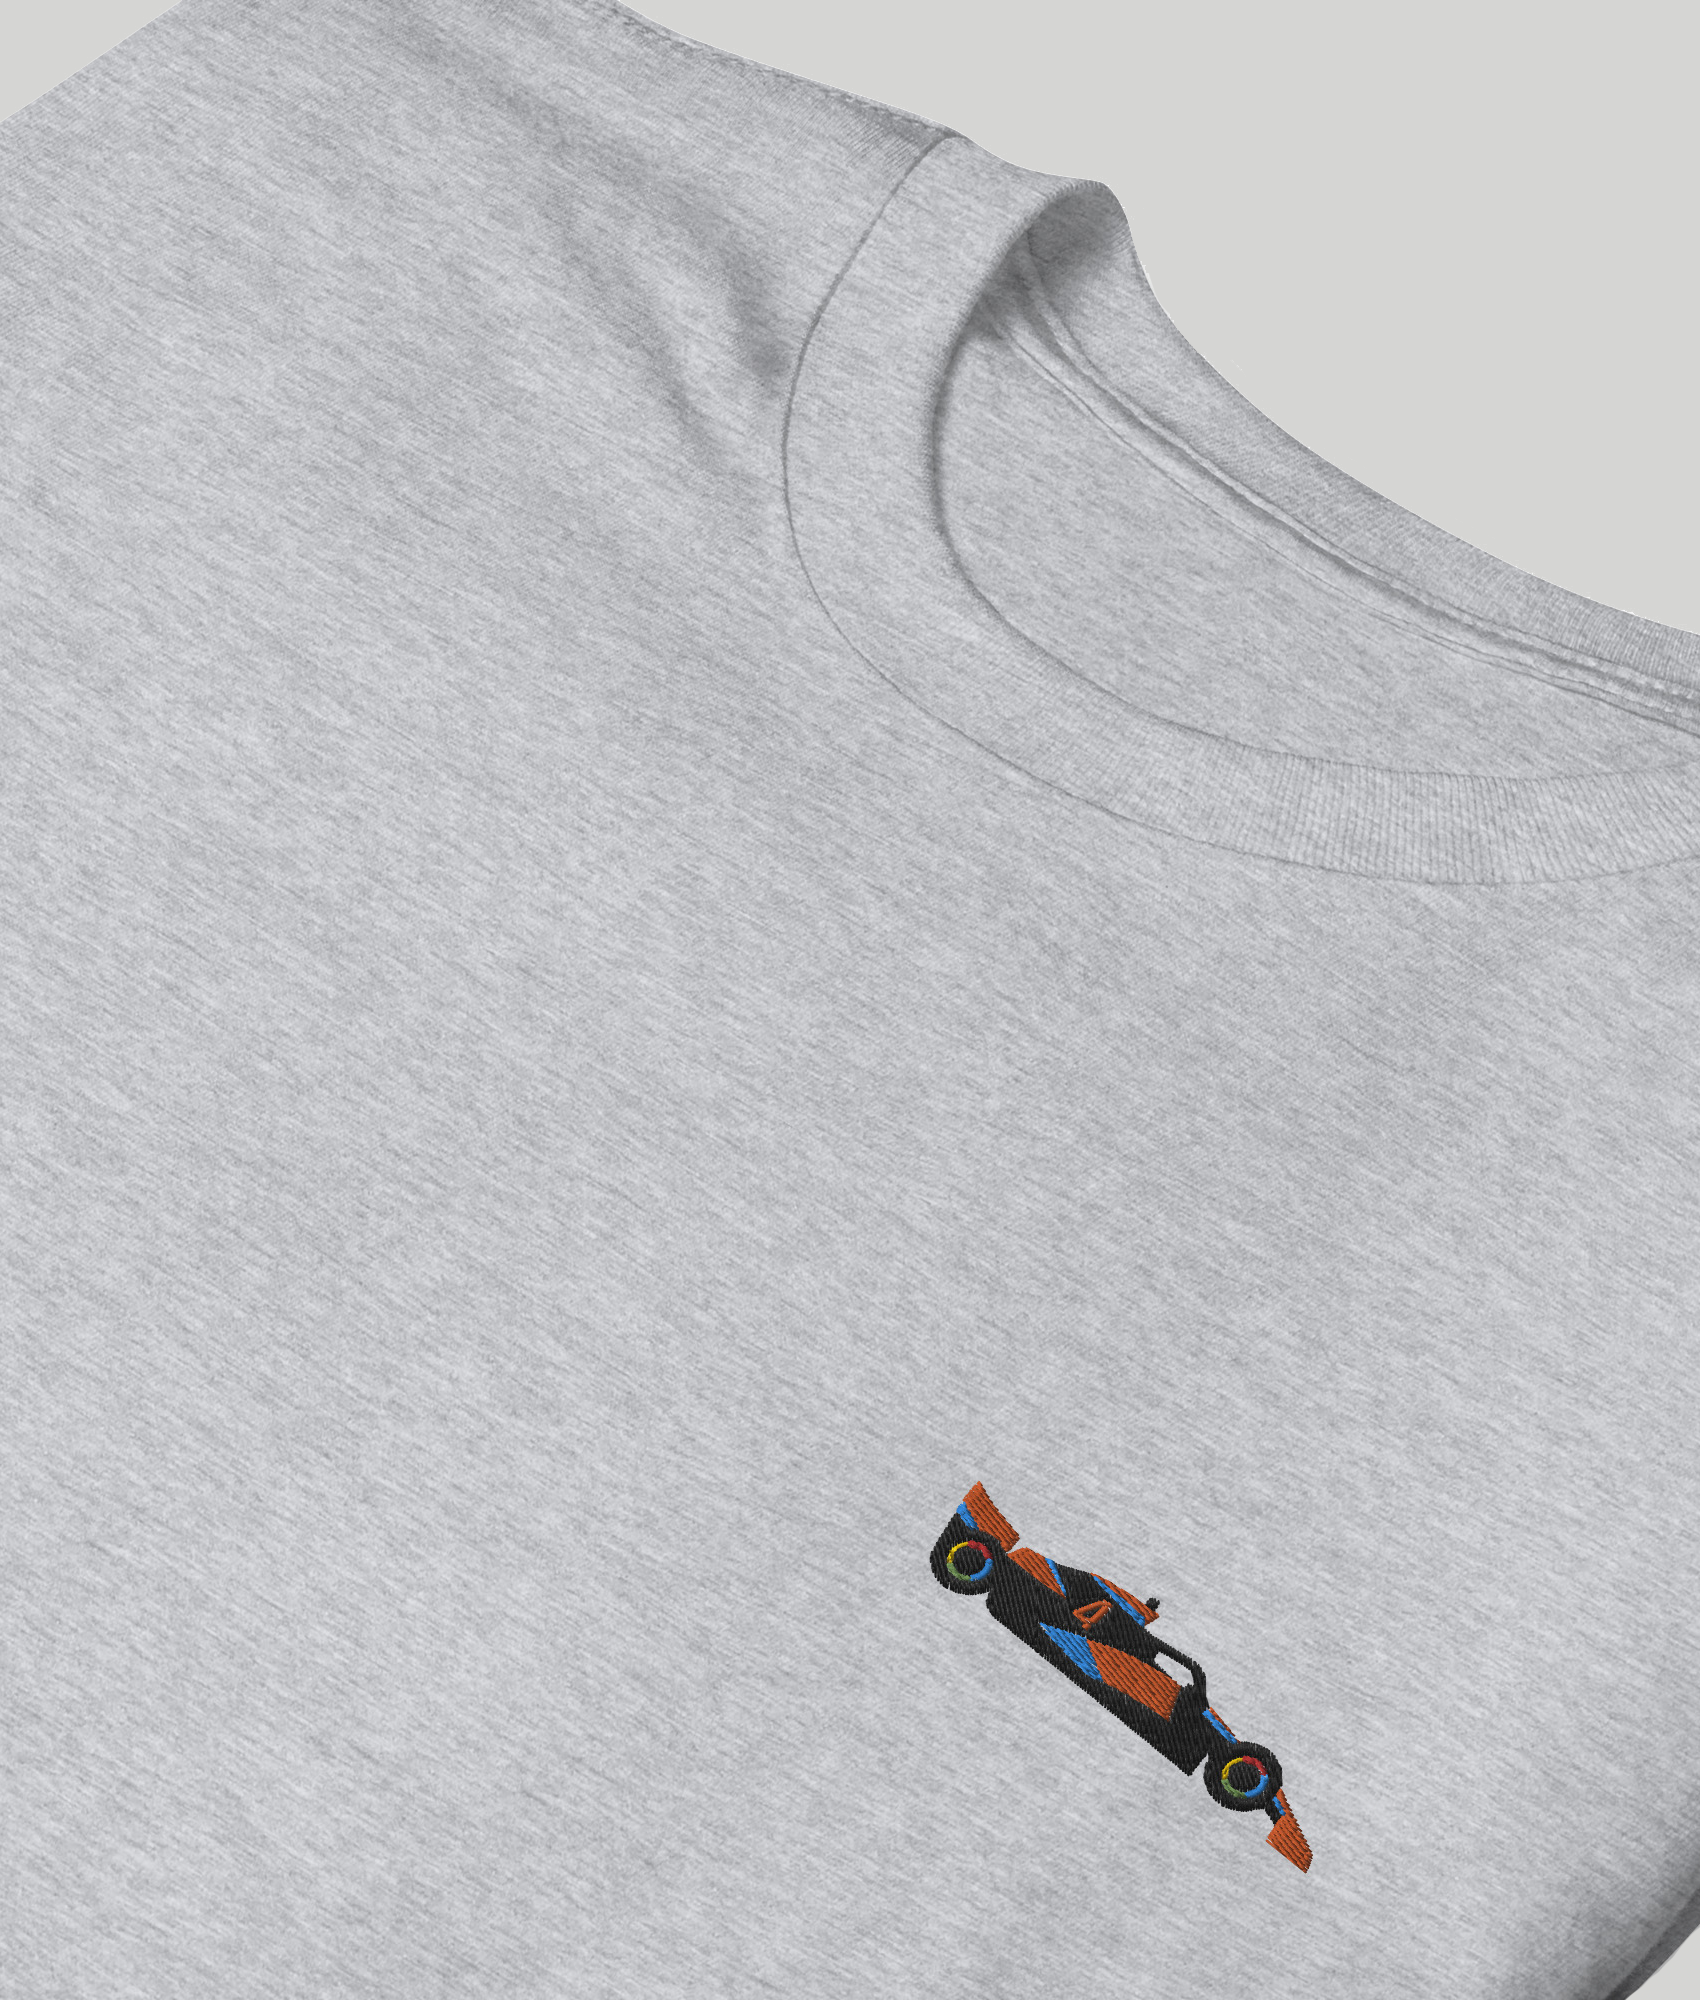 Embroidered Lando Norris McLaren F1 Car Unisex T-Shirt